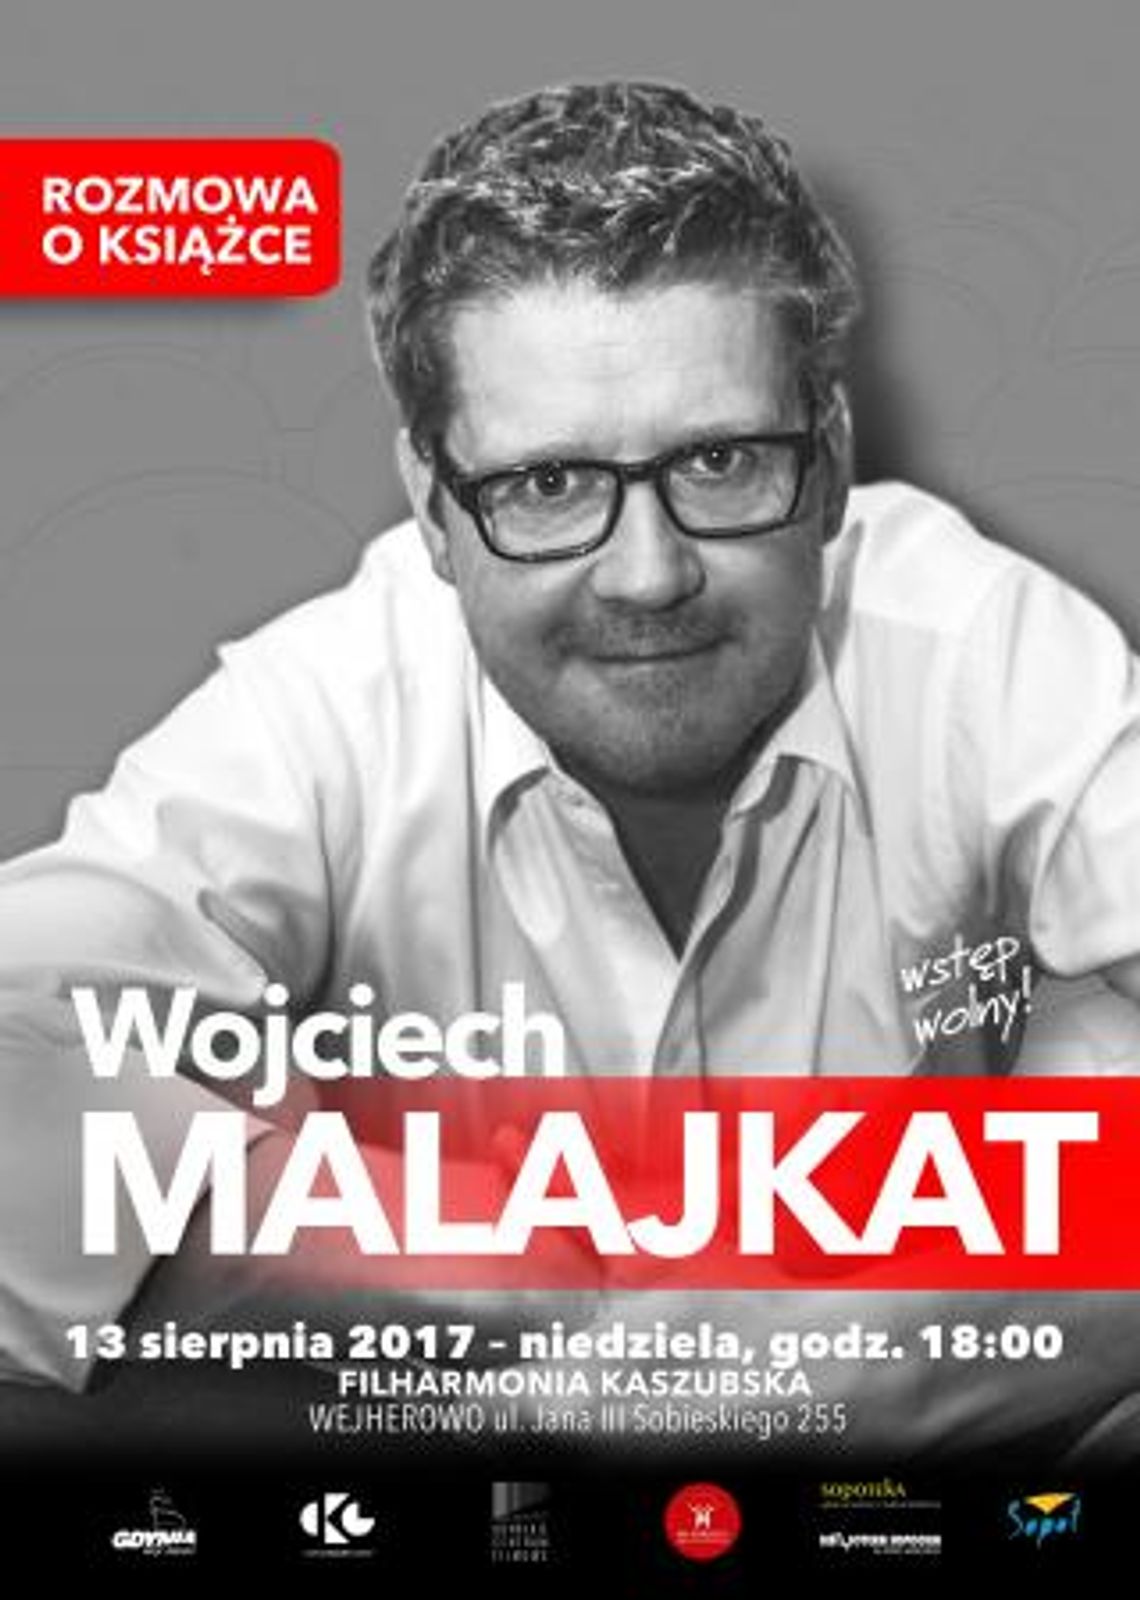 Rozmowa o książce - Wojciech Malajkat.